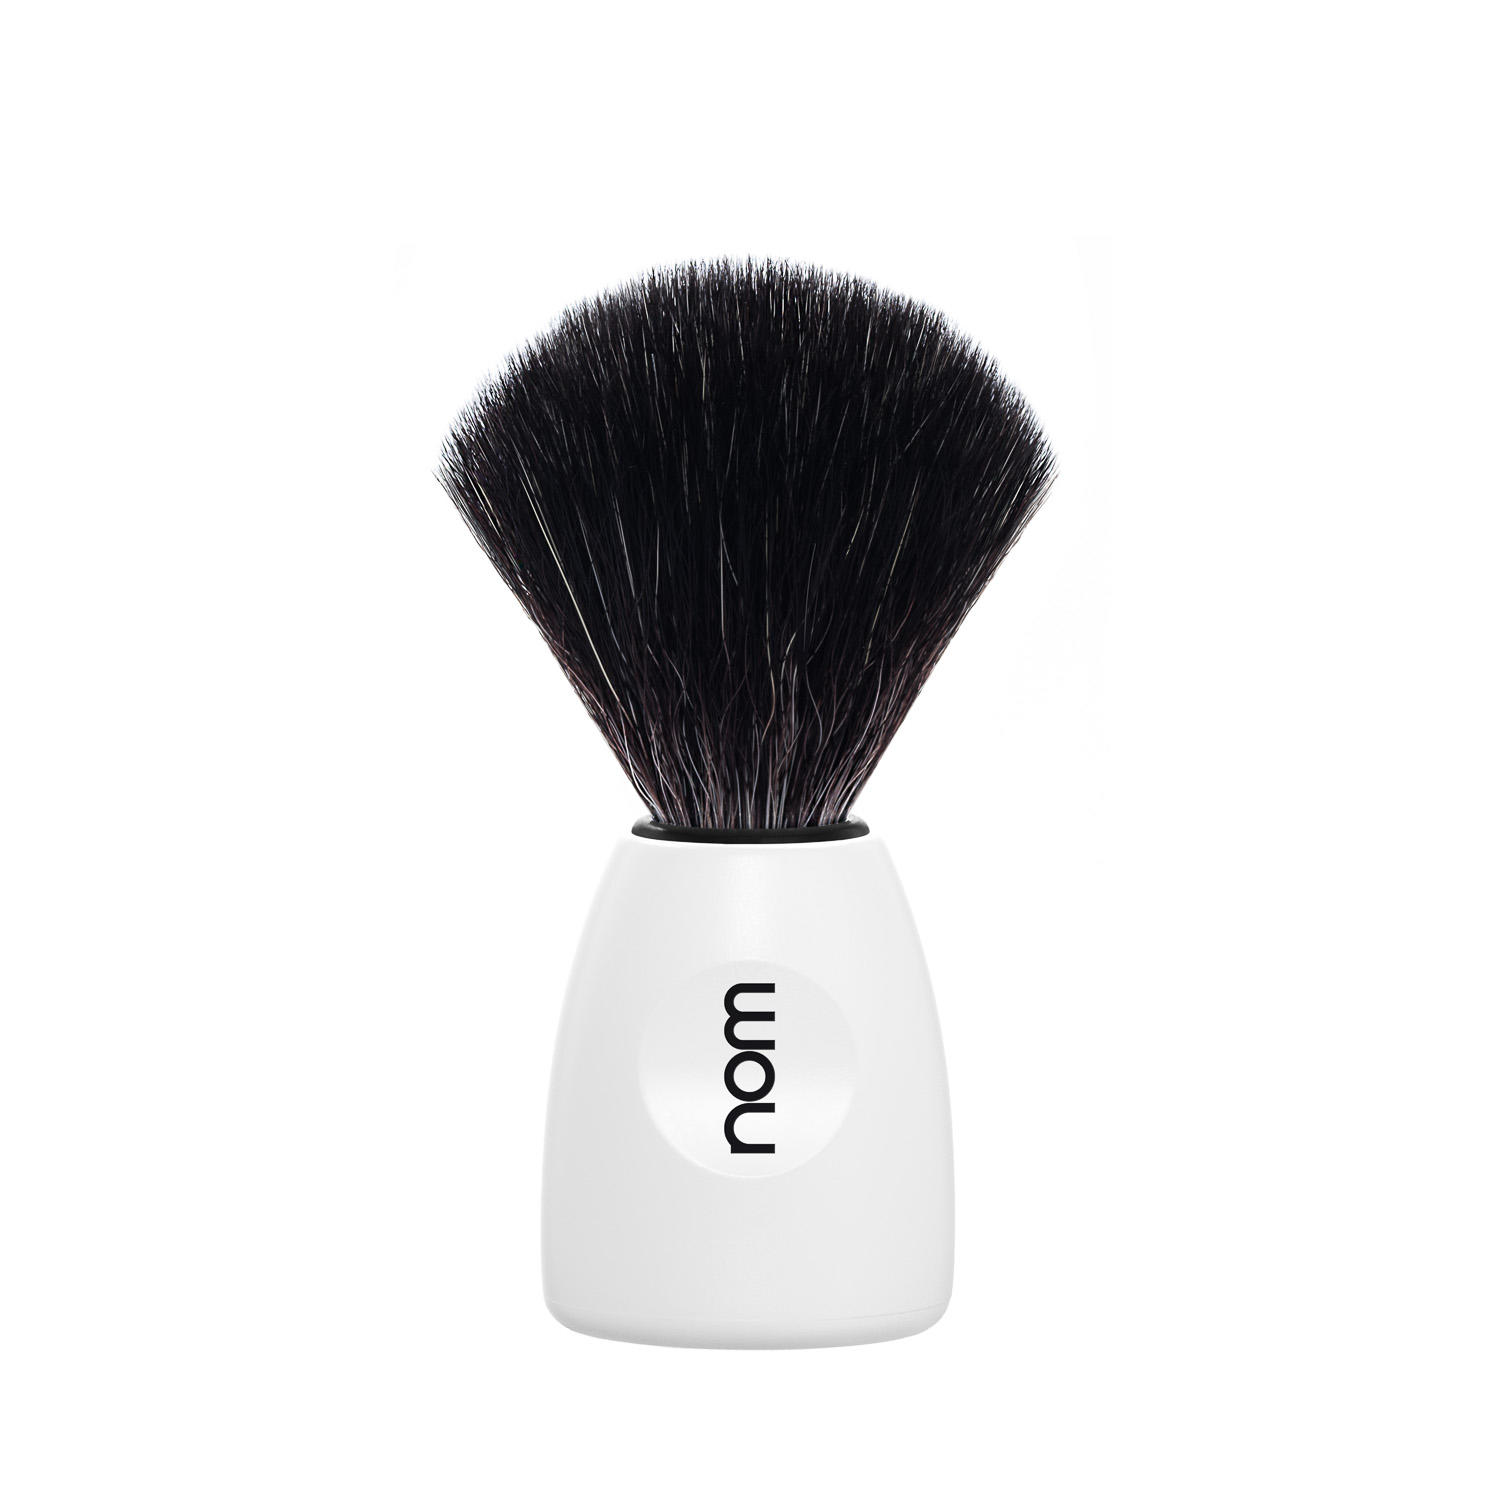 nom, LASSE in White with Black Fibre Shaving Brush